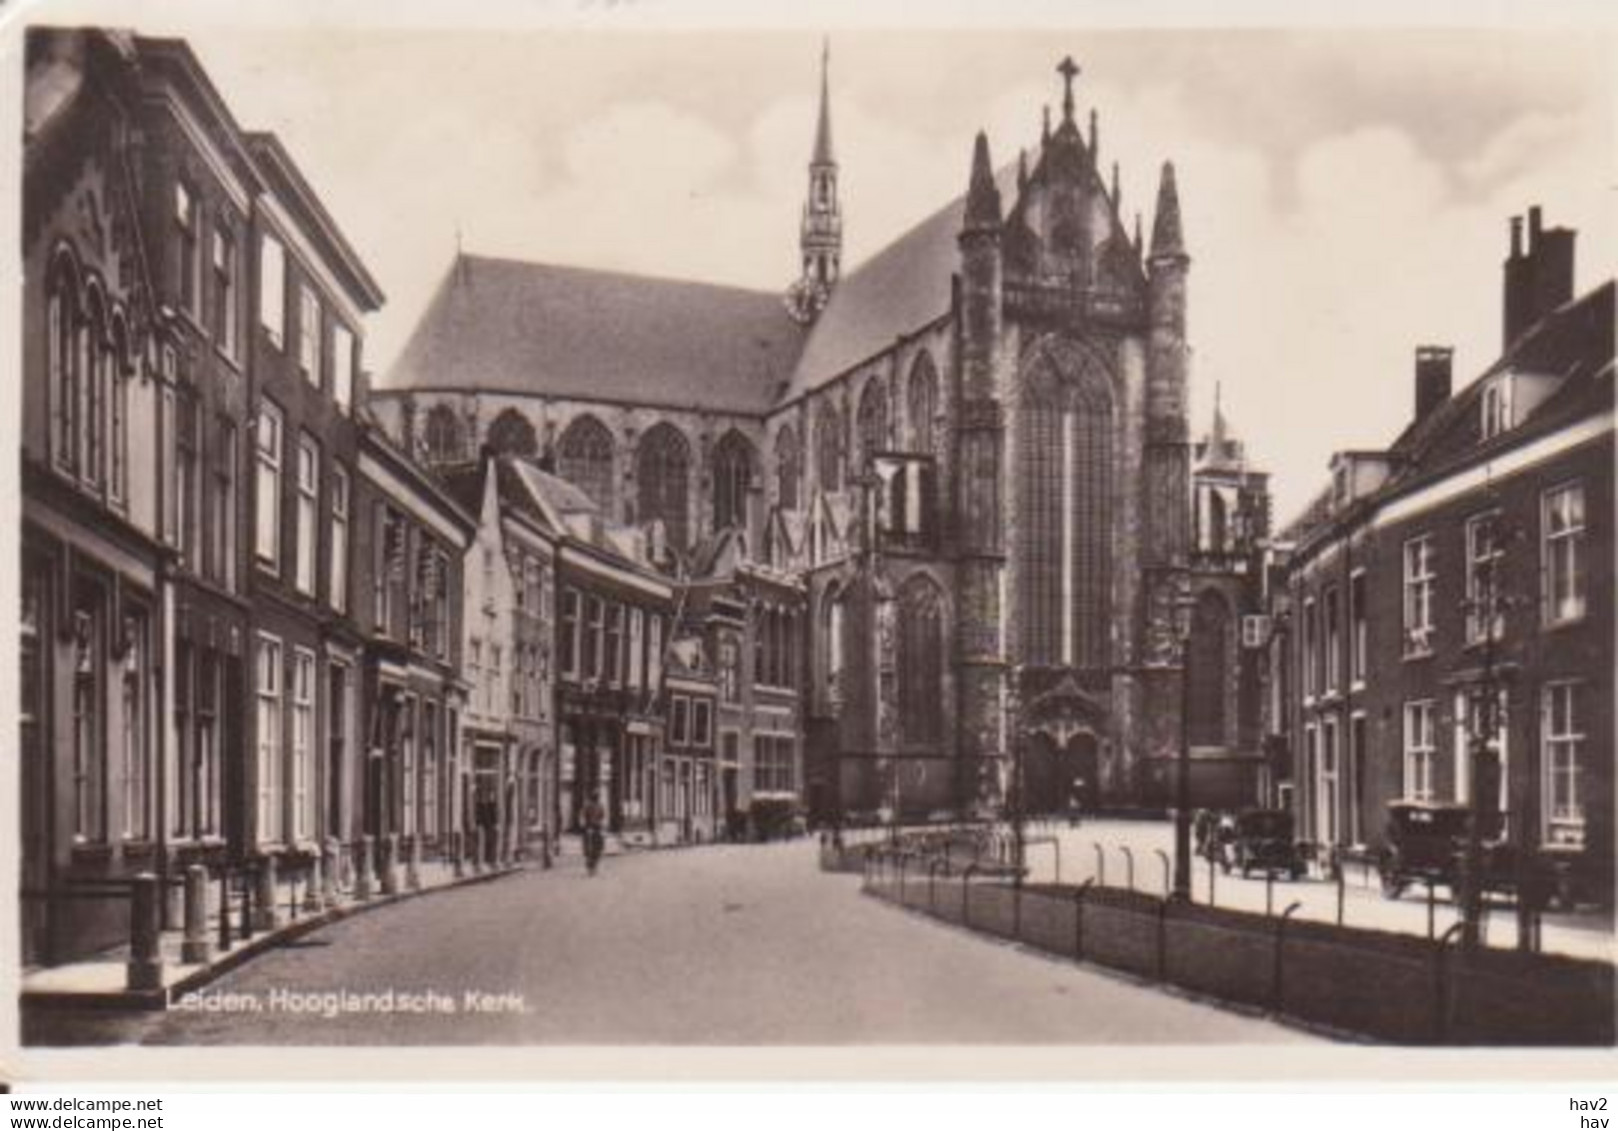 Leiden Hooglandsche Kerk  RY13415 - Leiden